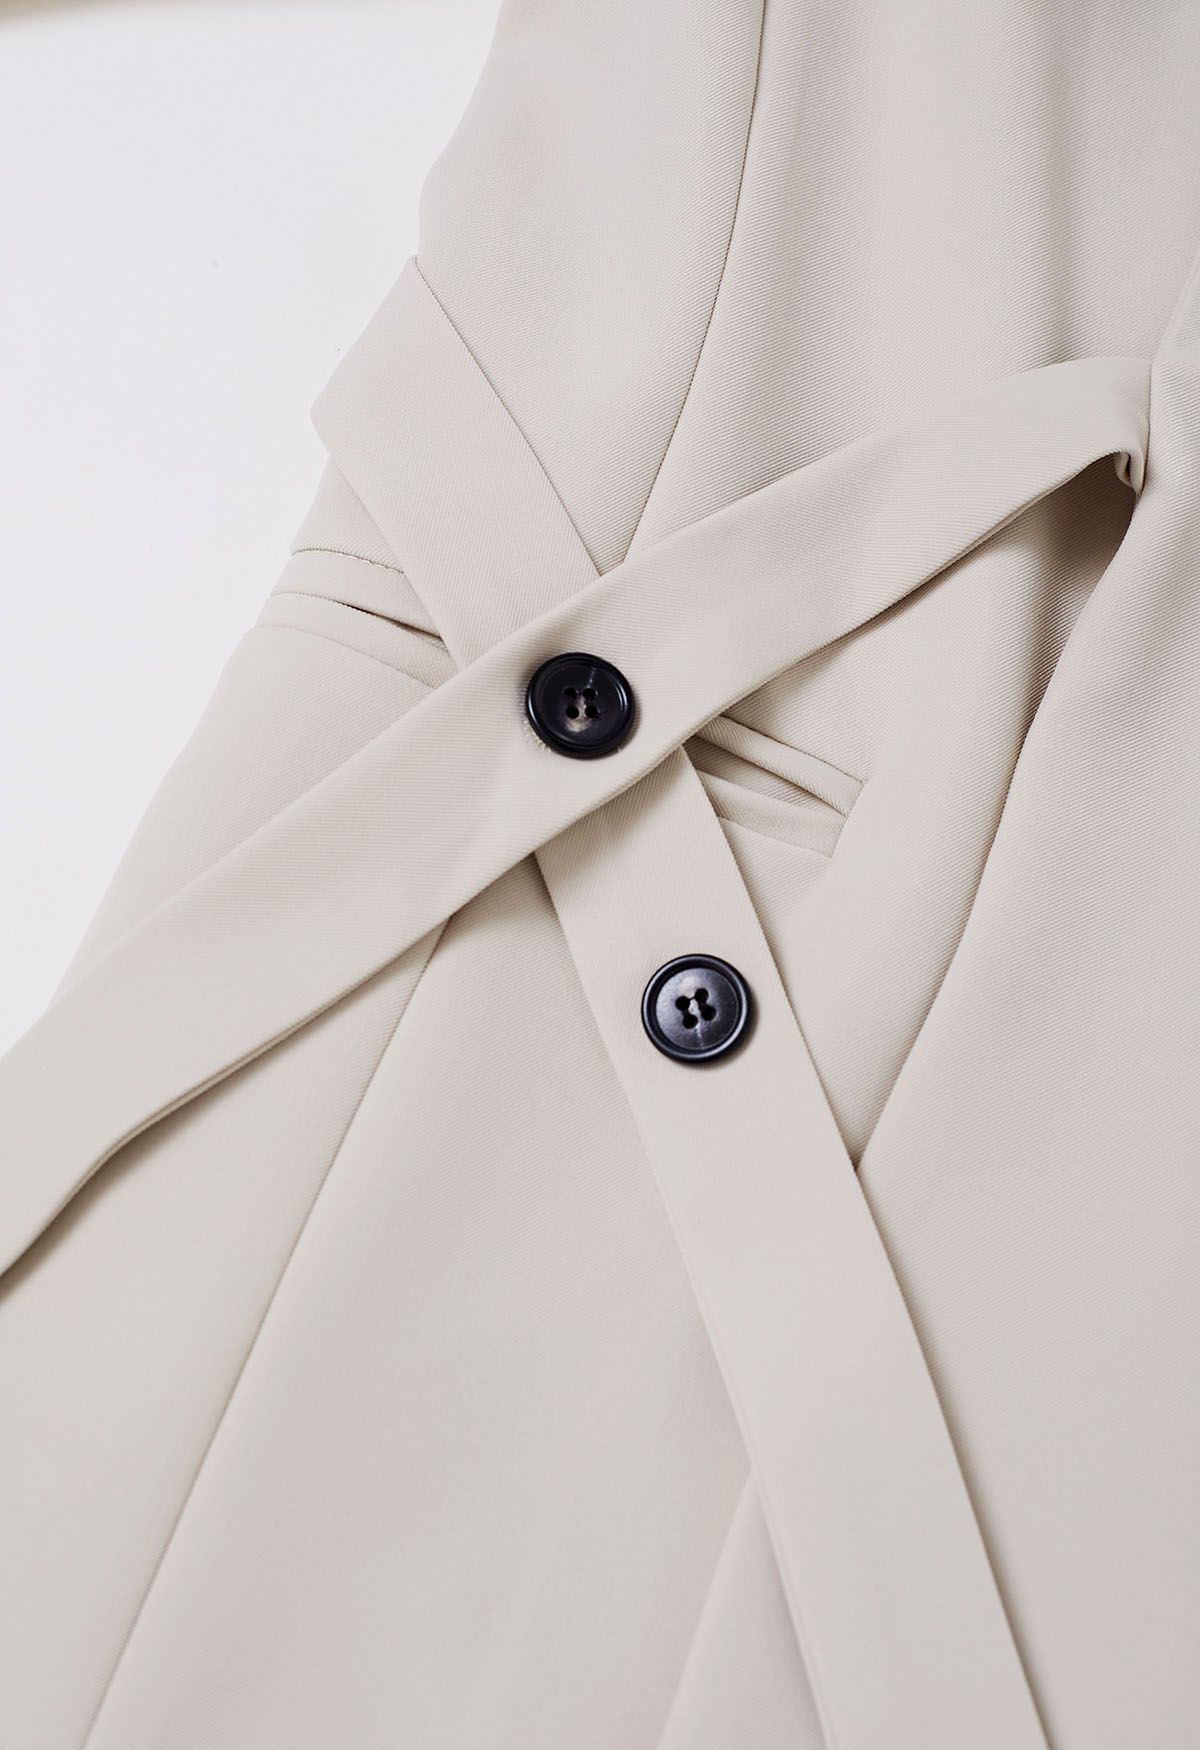 Shawl Collar Buttoned Waist Blazer in Ivory